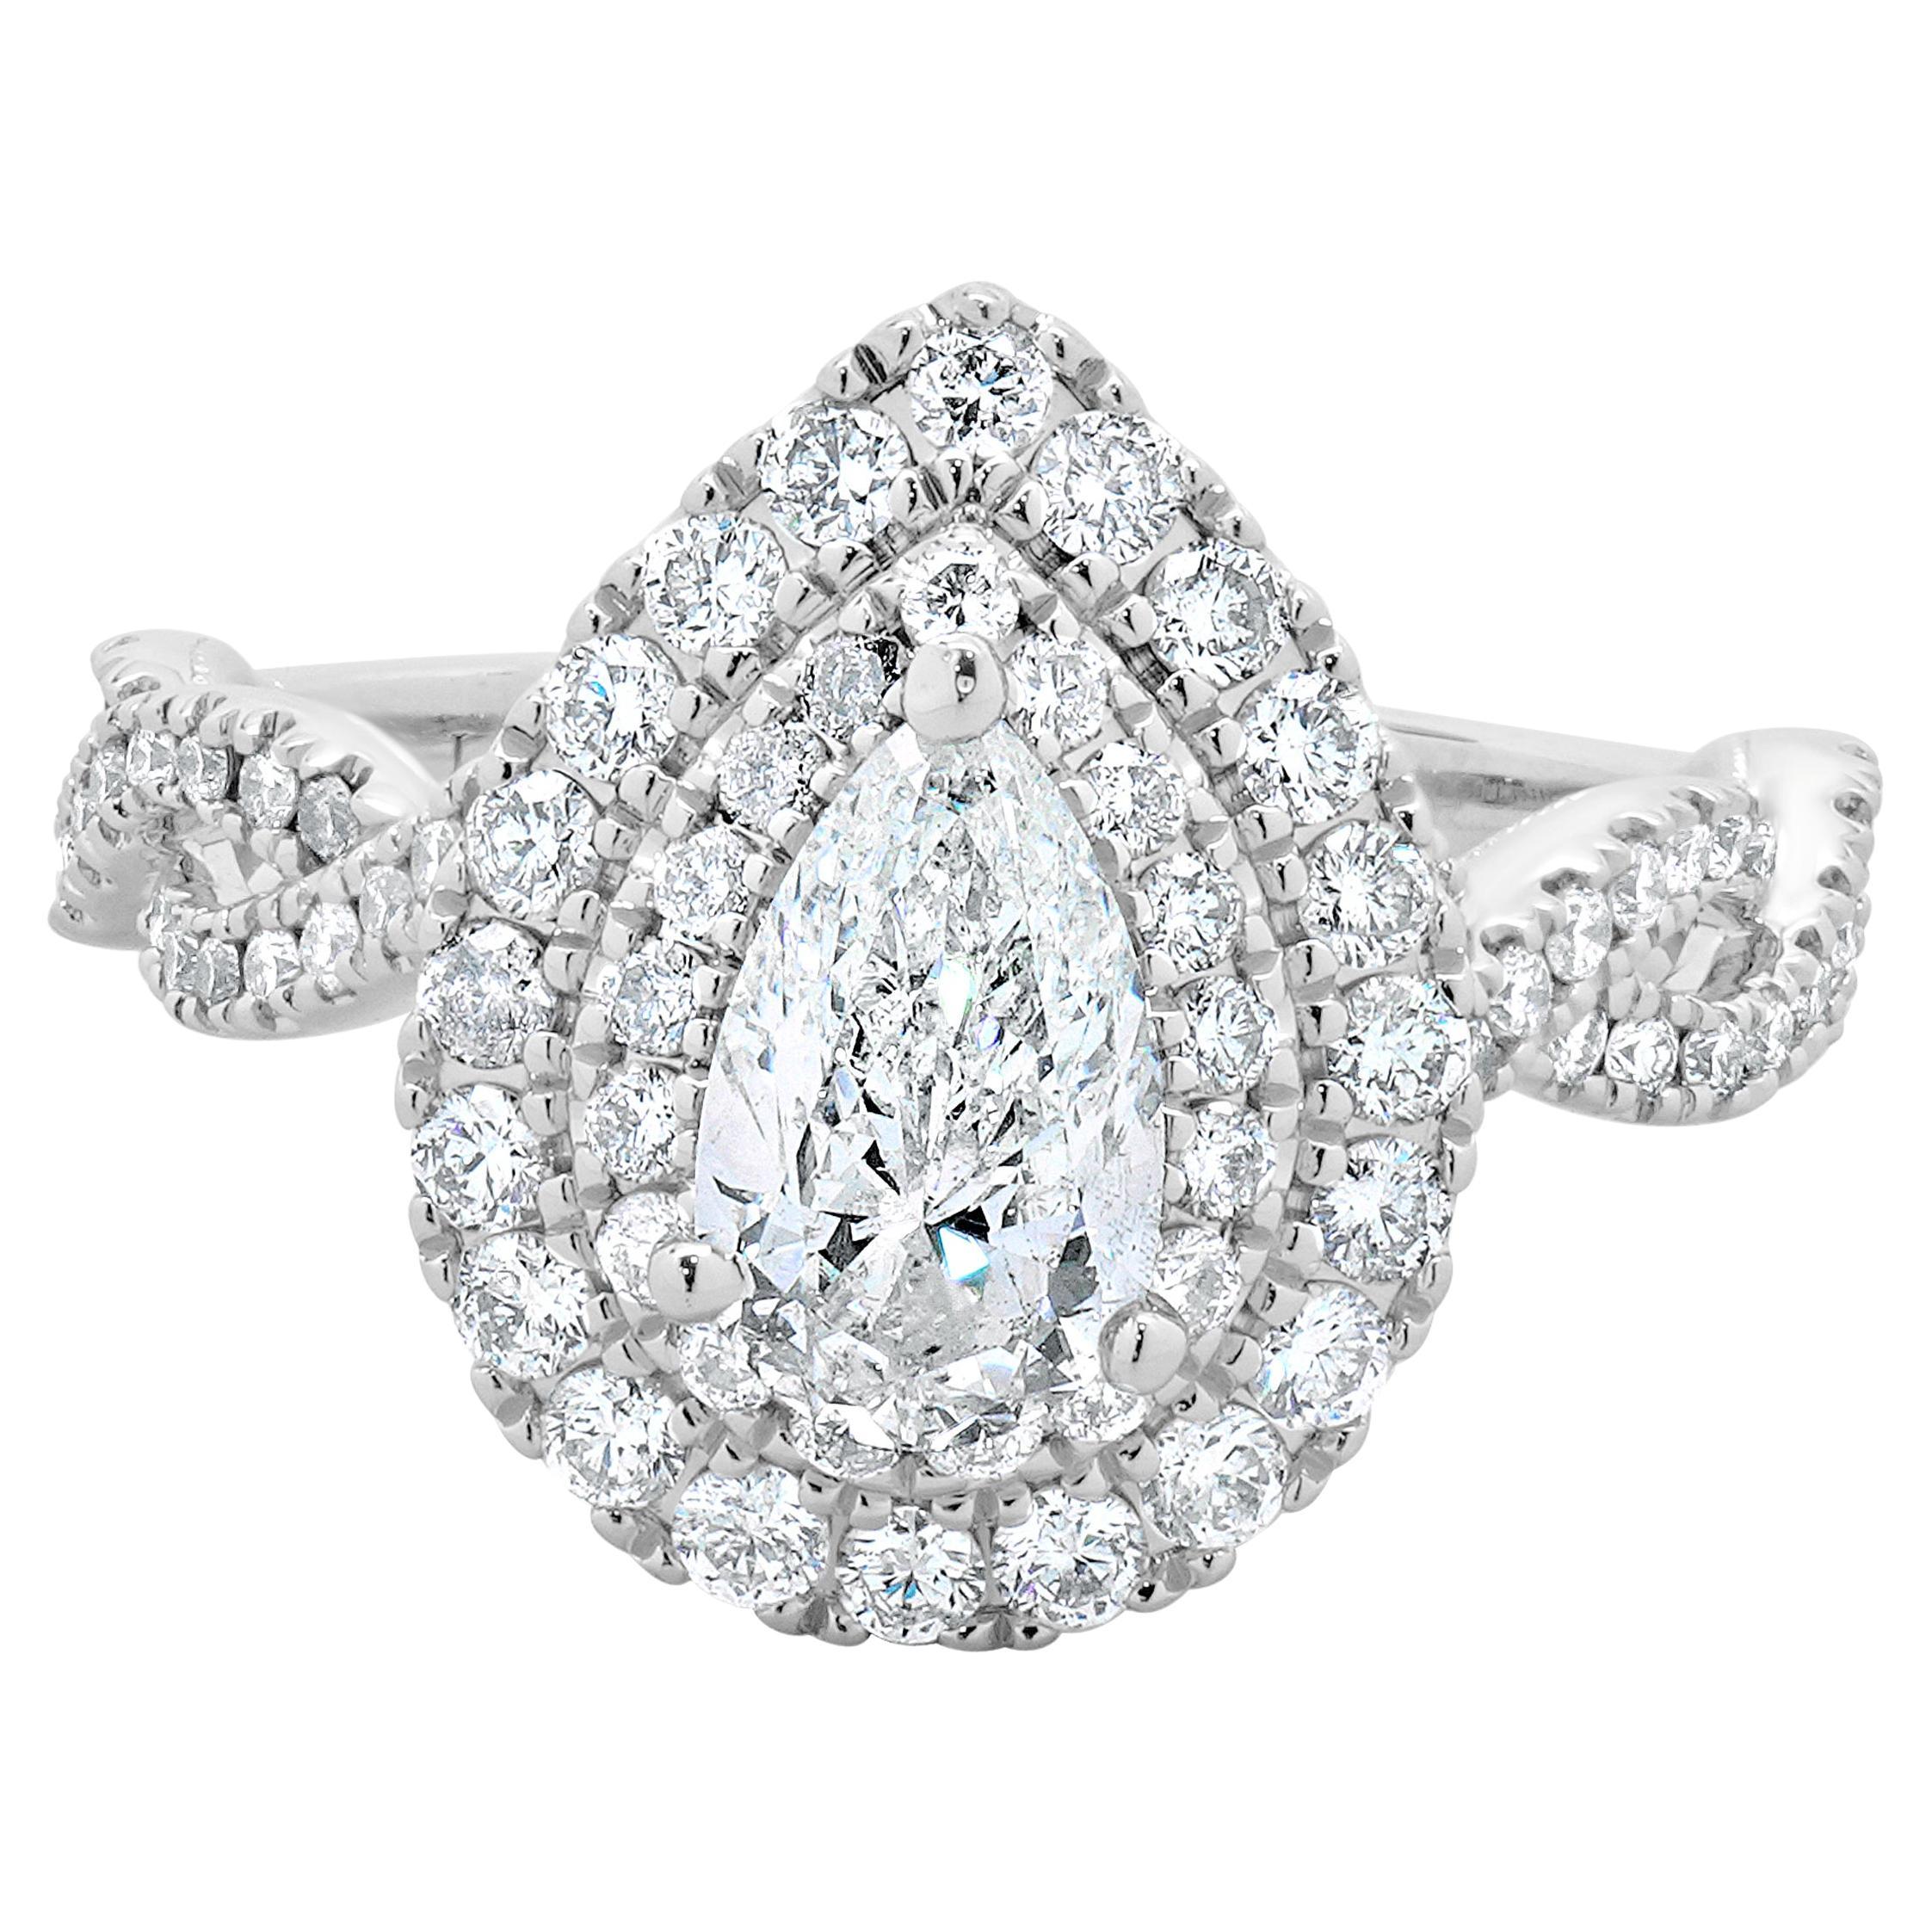 Neil Lane 14 Karat White Gold Pear Cut Diamond Engagement Ring